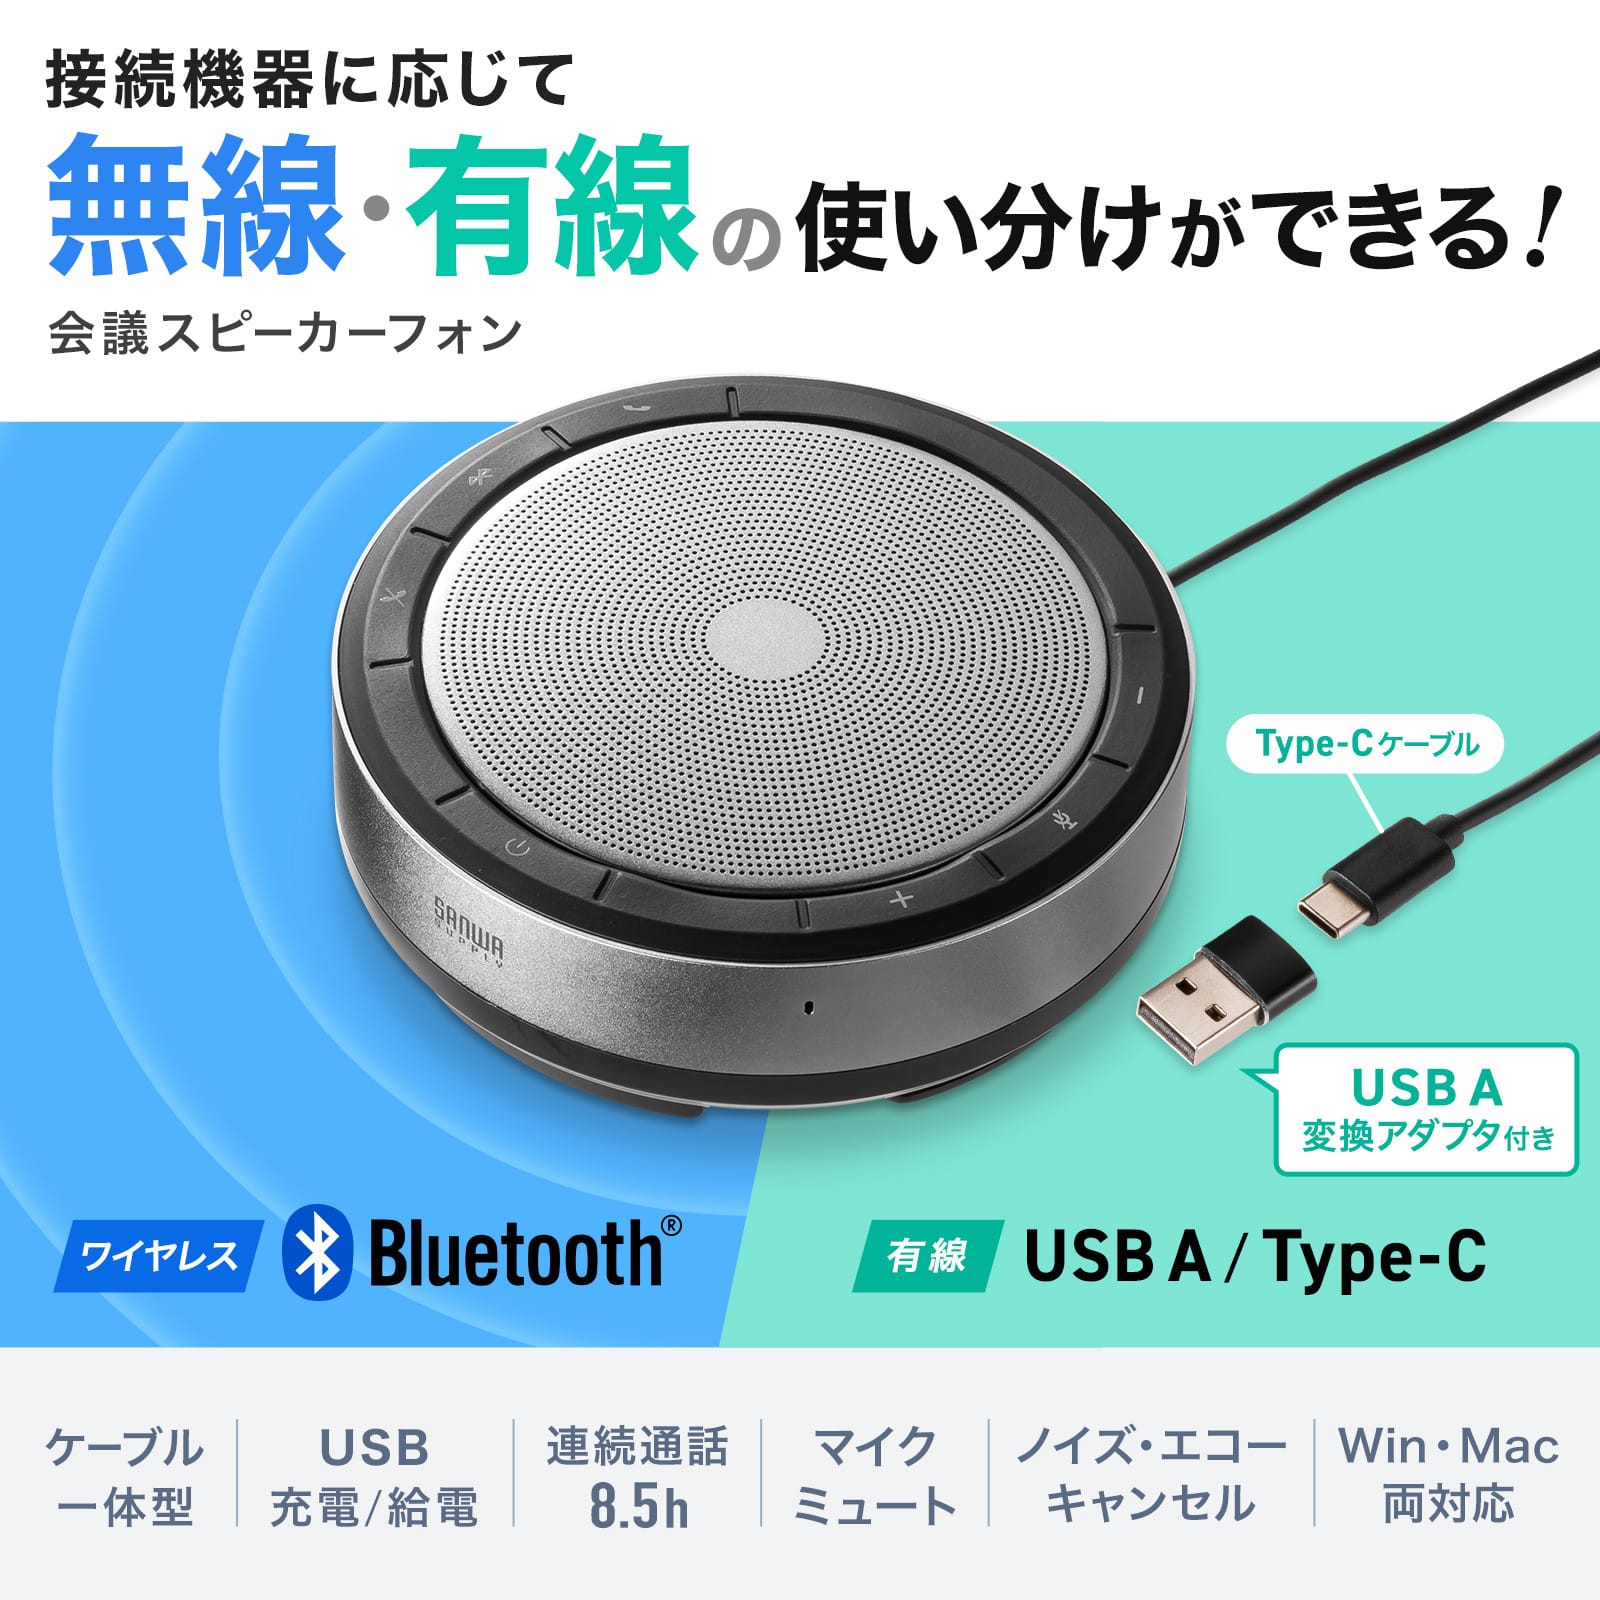 サンワサプライ、Bluetooth/USB対応の会議用スピーカーフォンを発売